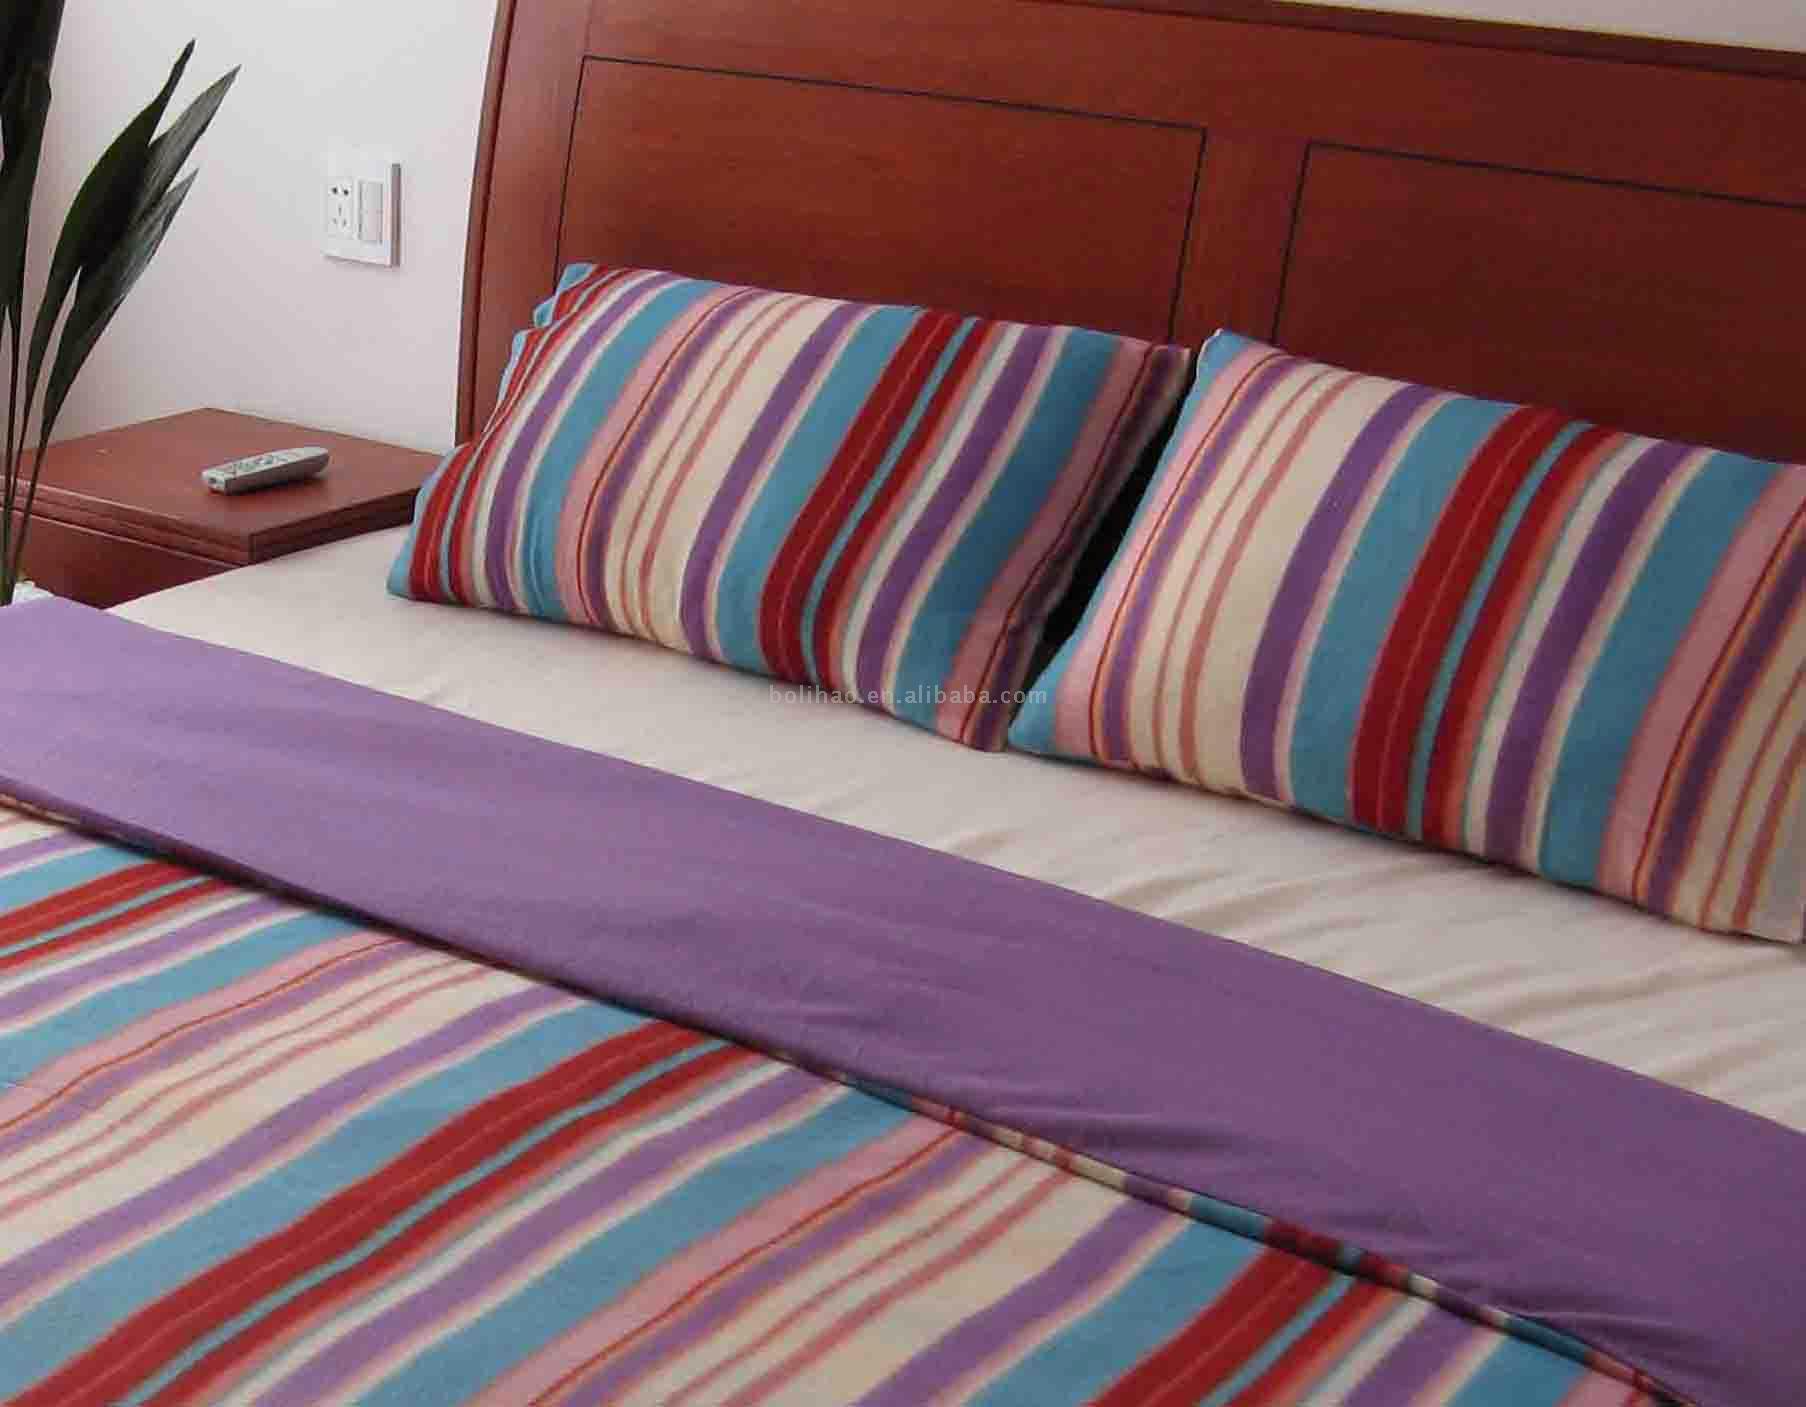  3pc Bedding Set (3pc Комплекты постельных принадлежностей)